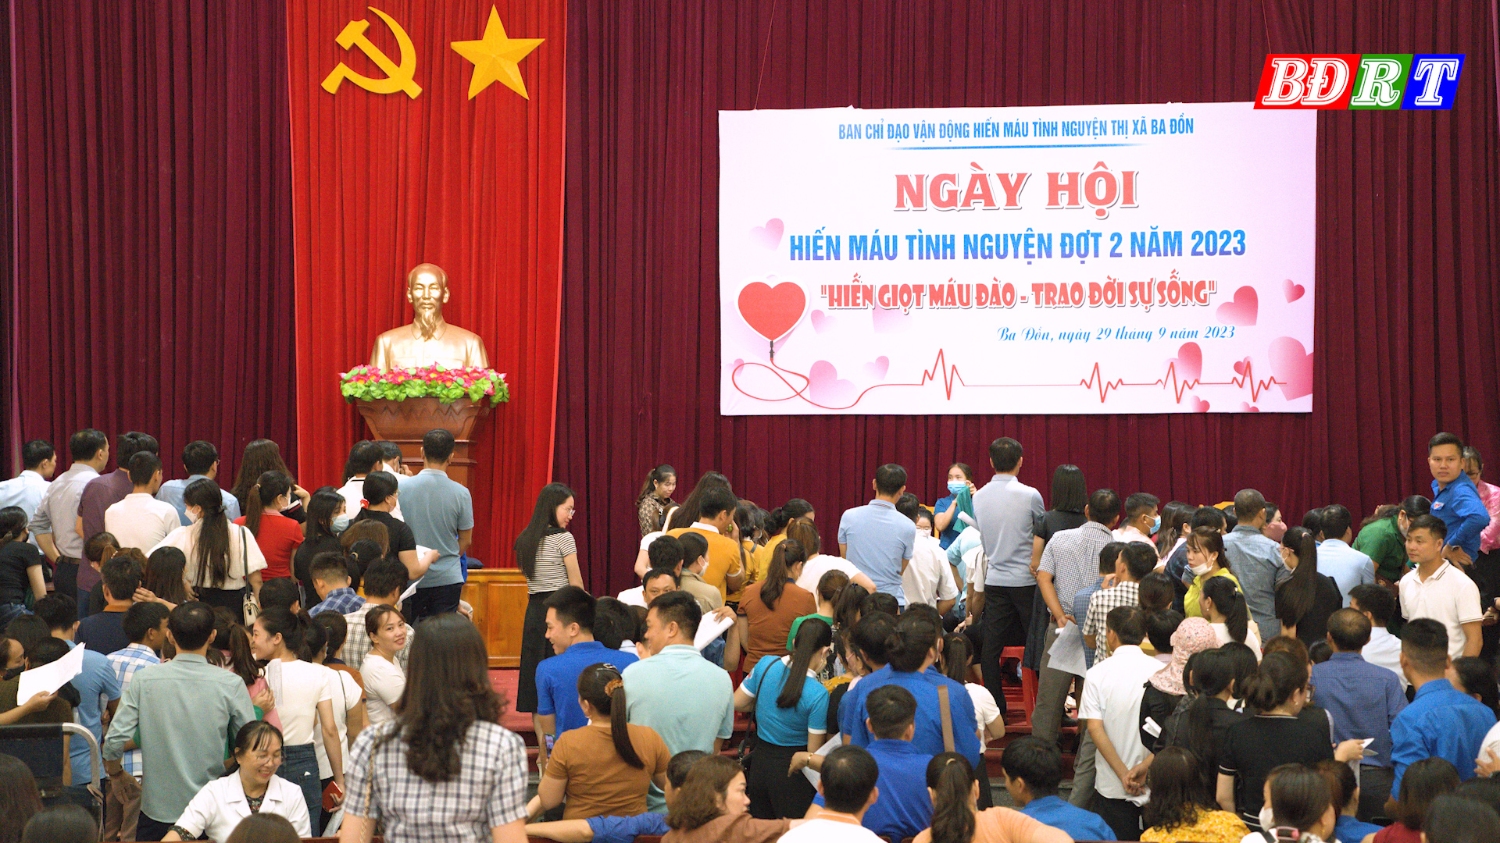 Lan tỏa phong trào hiến máu tình nguyện thị xã Ba Đồn